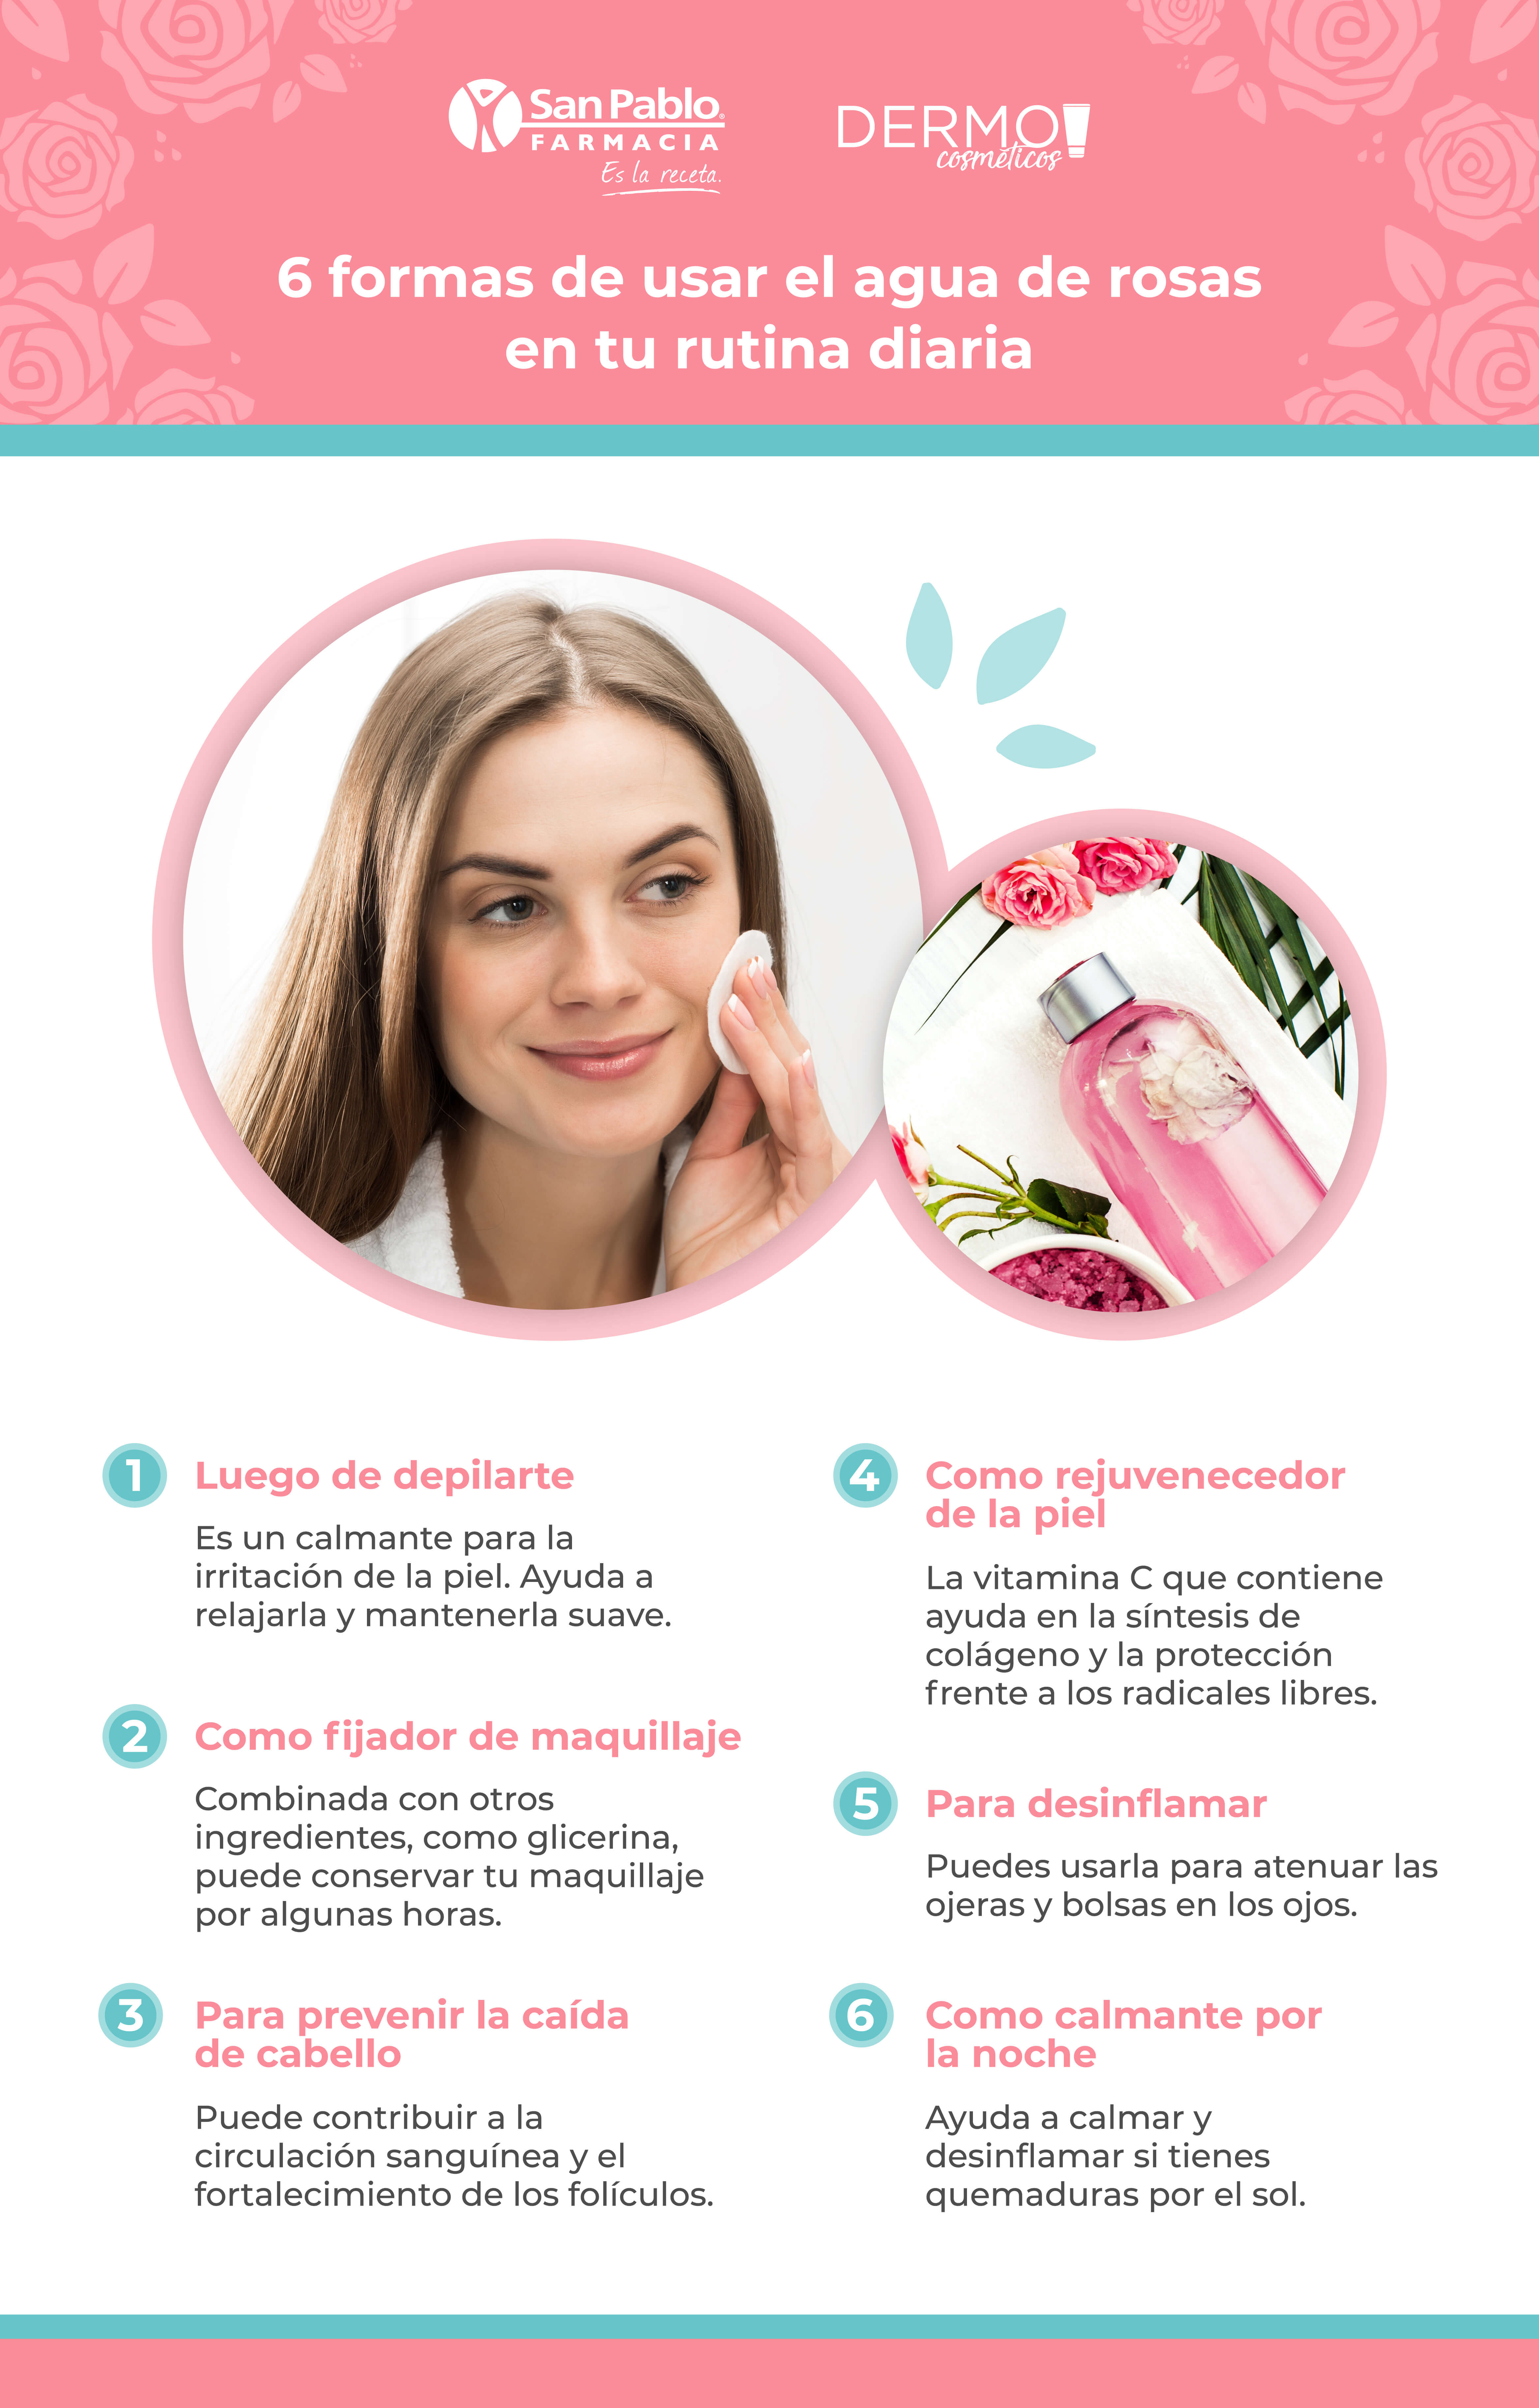 3 Formas de usar pétalos de rosa para el cuidado de la piel